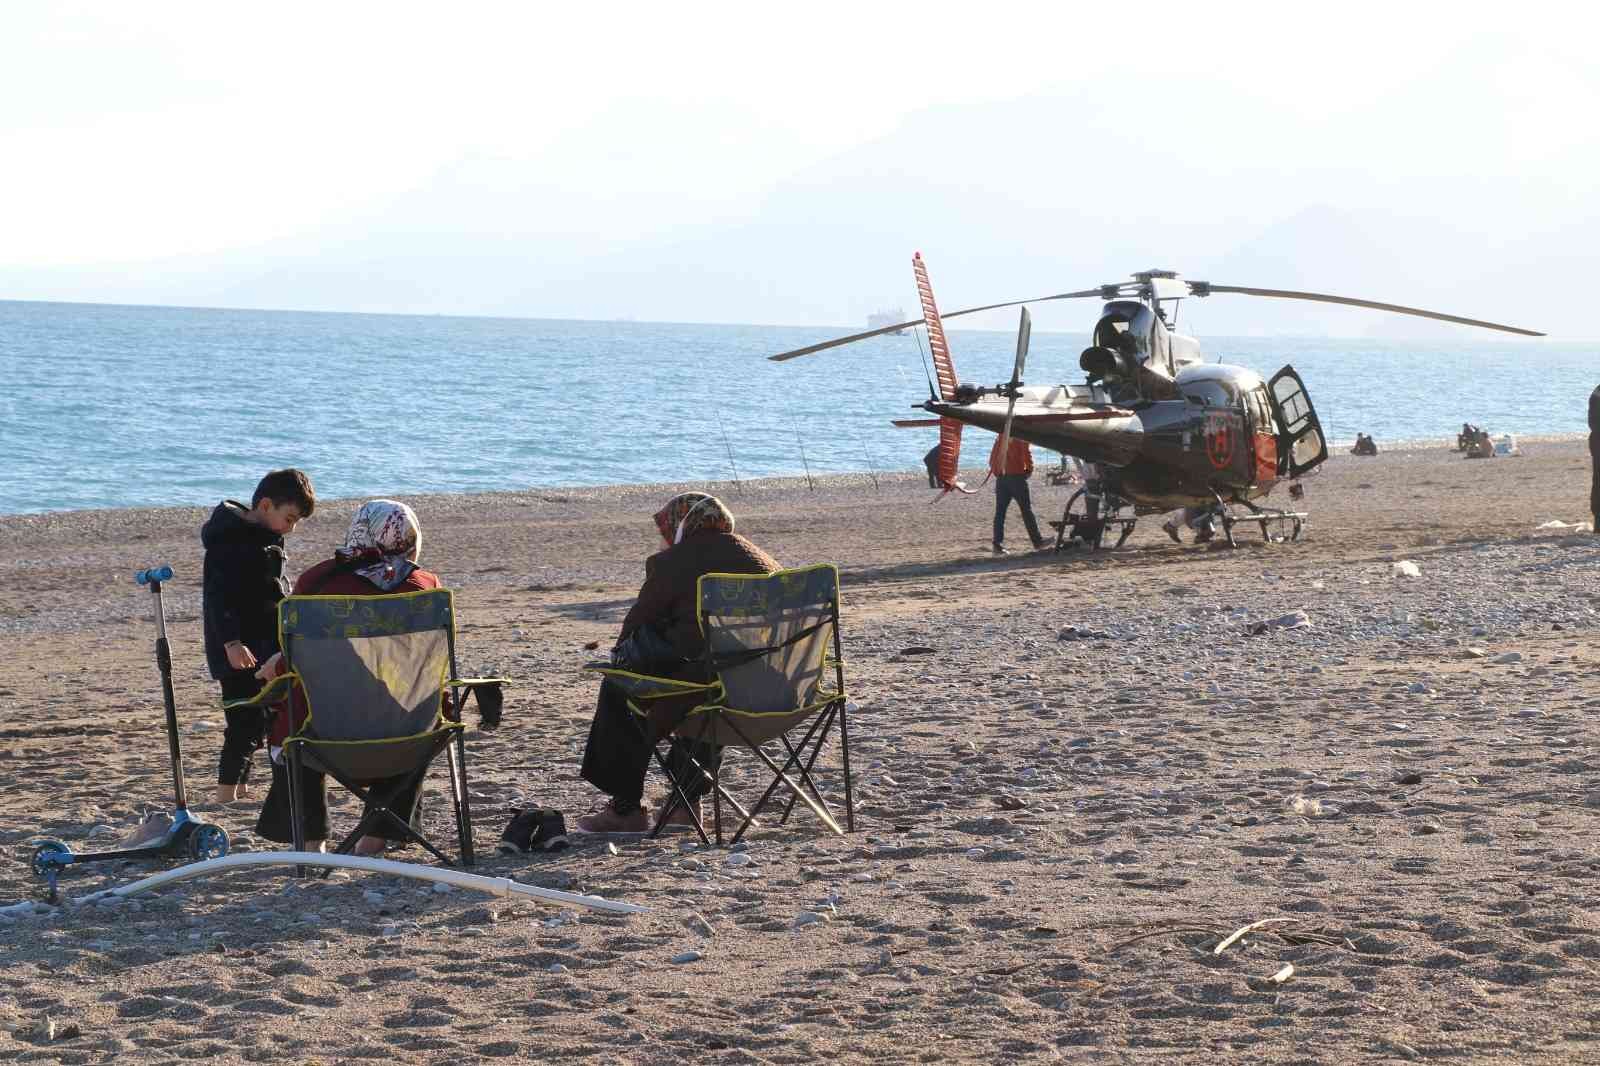 Bisiklet turunu görüntüleyen helikopter arızalandı, dünyaca ünlü sahile iniş yapmak zorunda kaldı #antalya